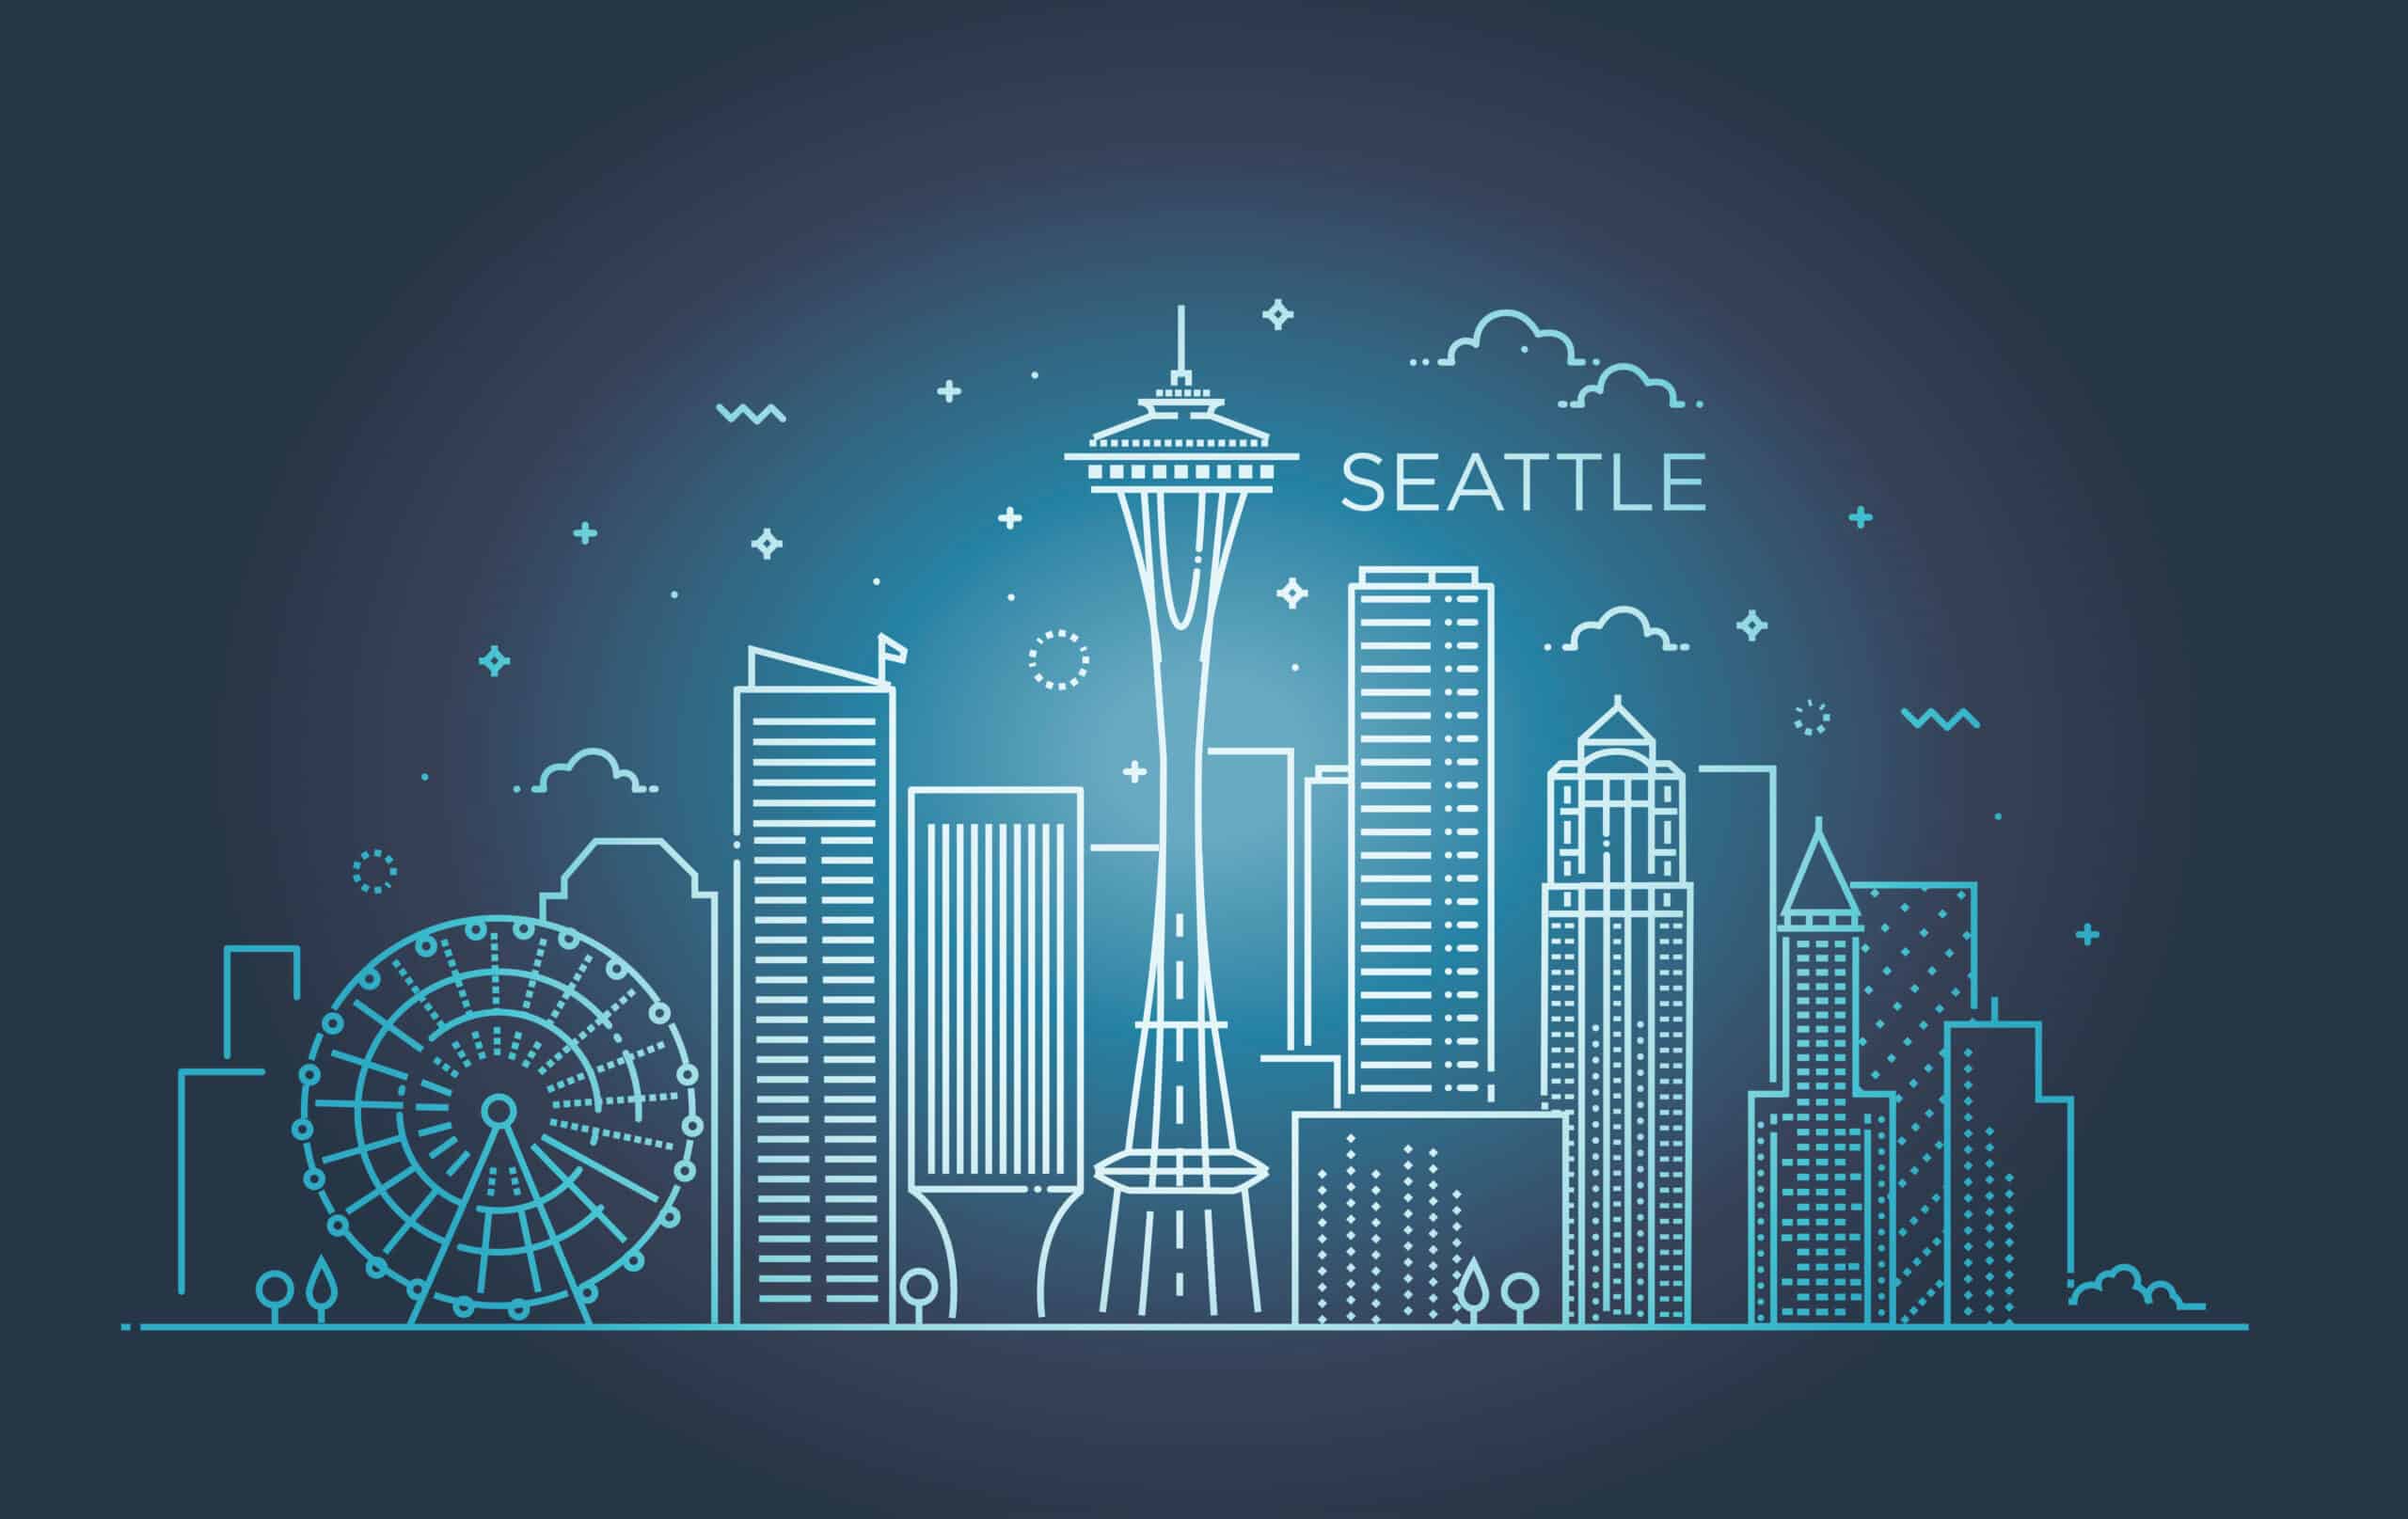 Seattle Skyline graphic